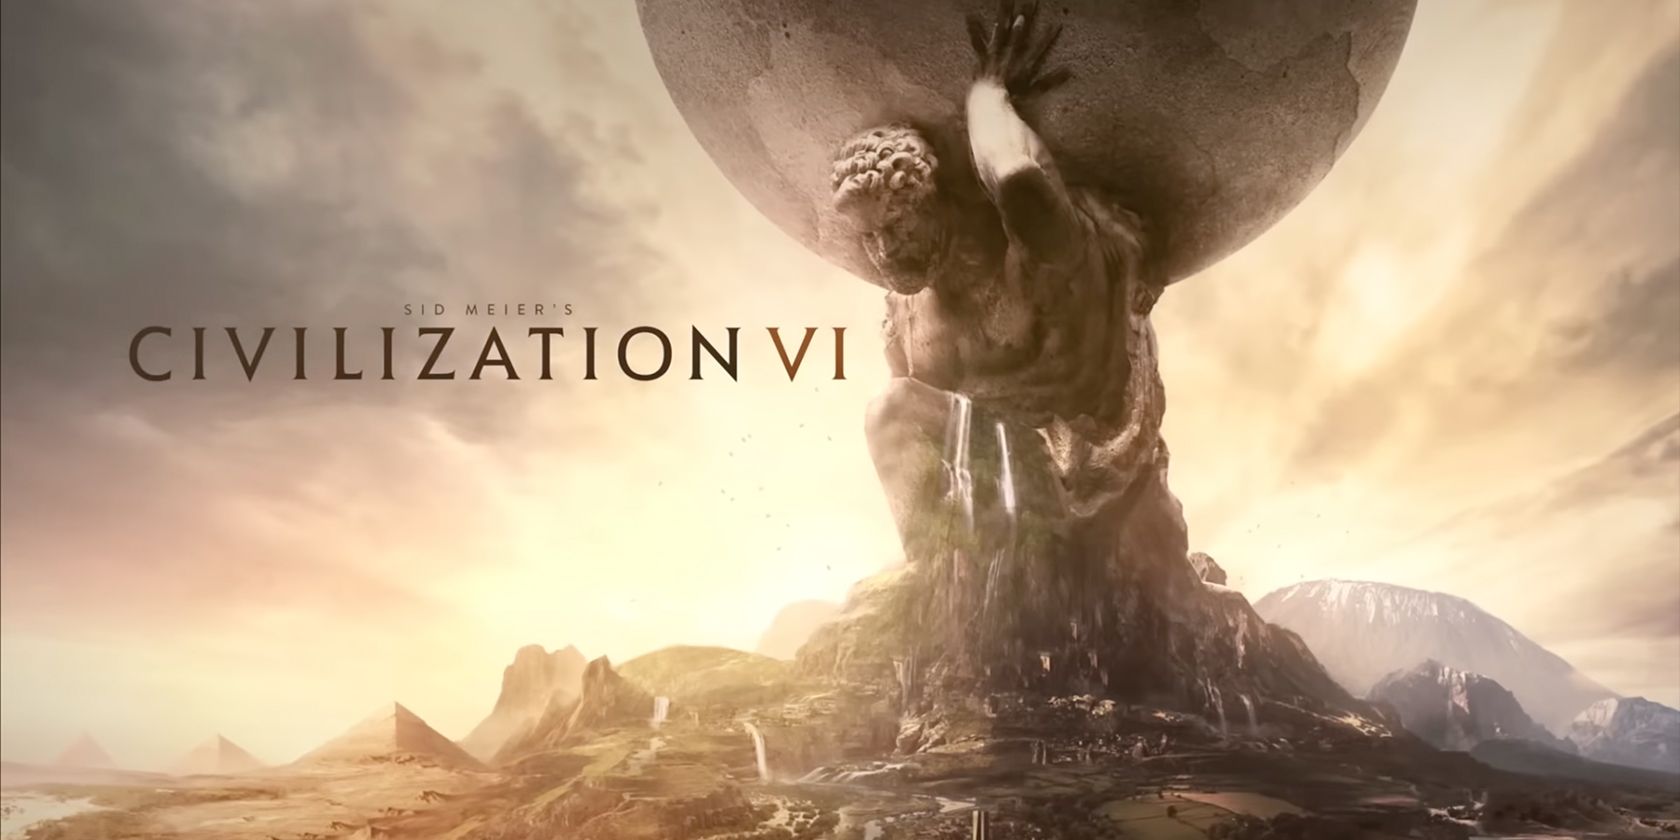 Civilization VI trailer screenshot